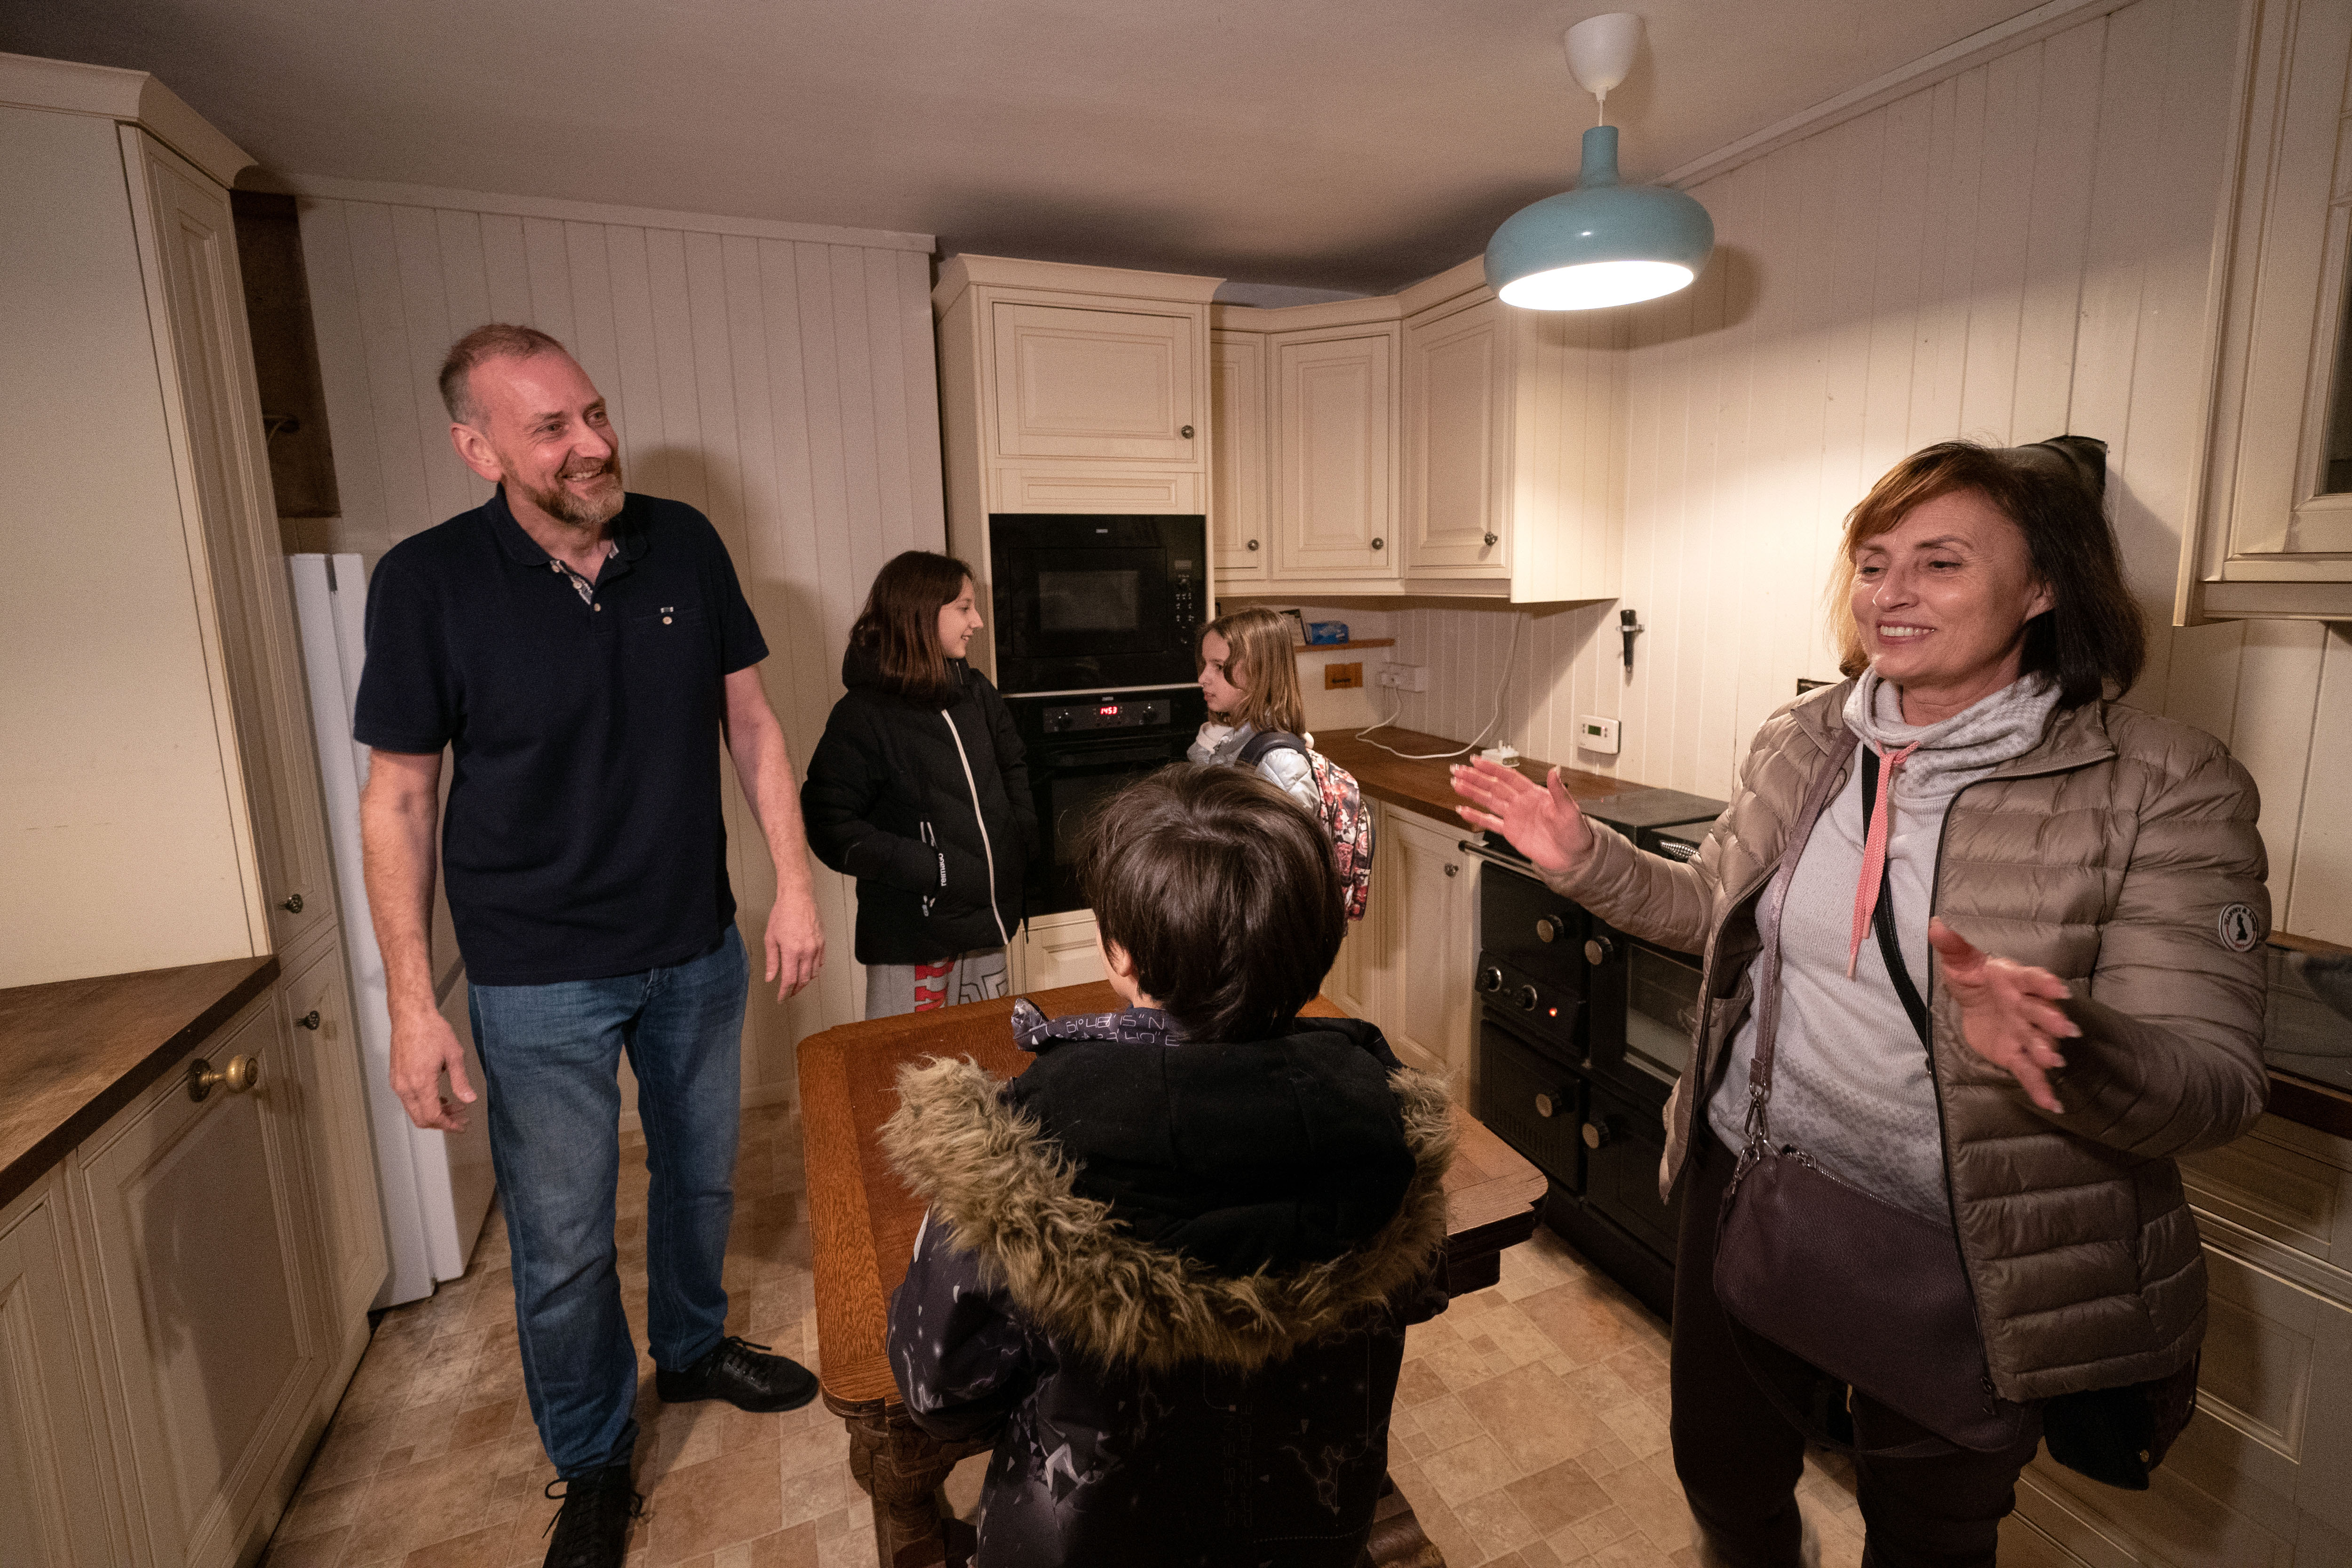 Businessman Mick Swinhoe shows Iryna Starkova and her grandchildren around the kitchen of their new home in Caldecote near Cambridge